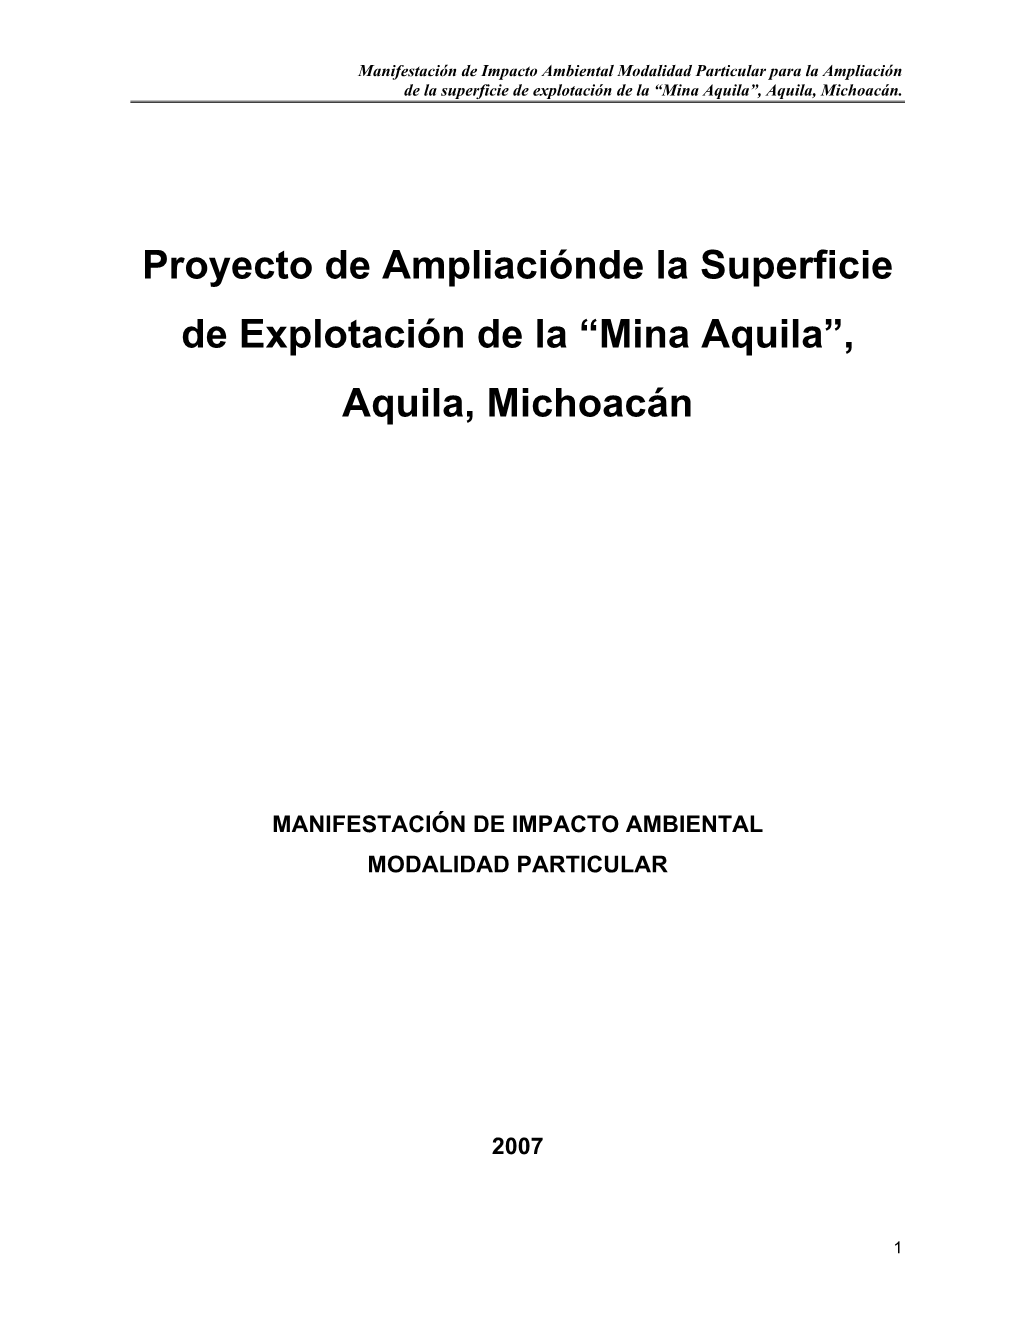 " Ampliación De La Superficie De Explotación De La Mina Aquila